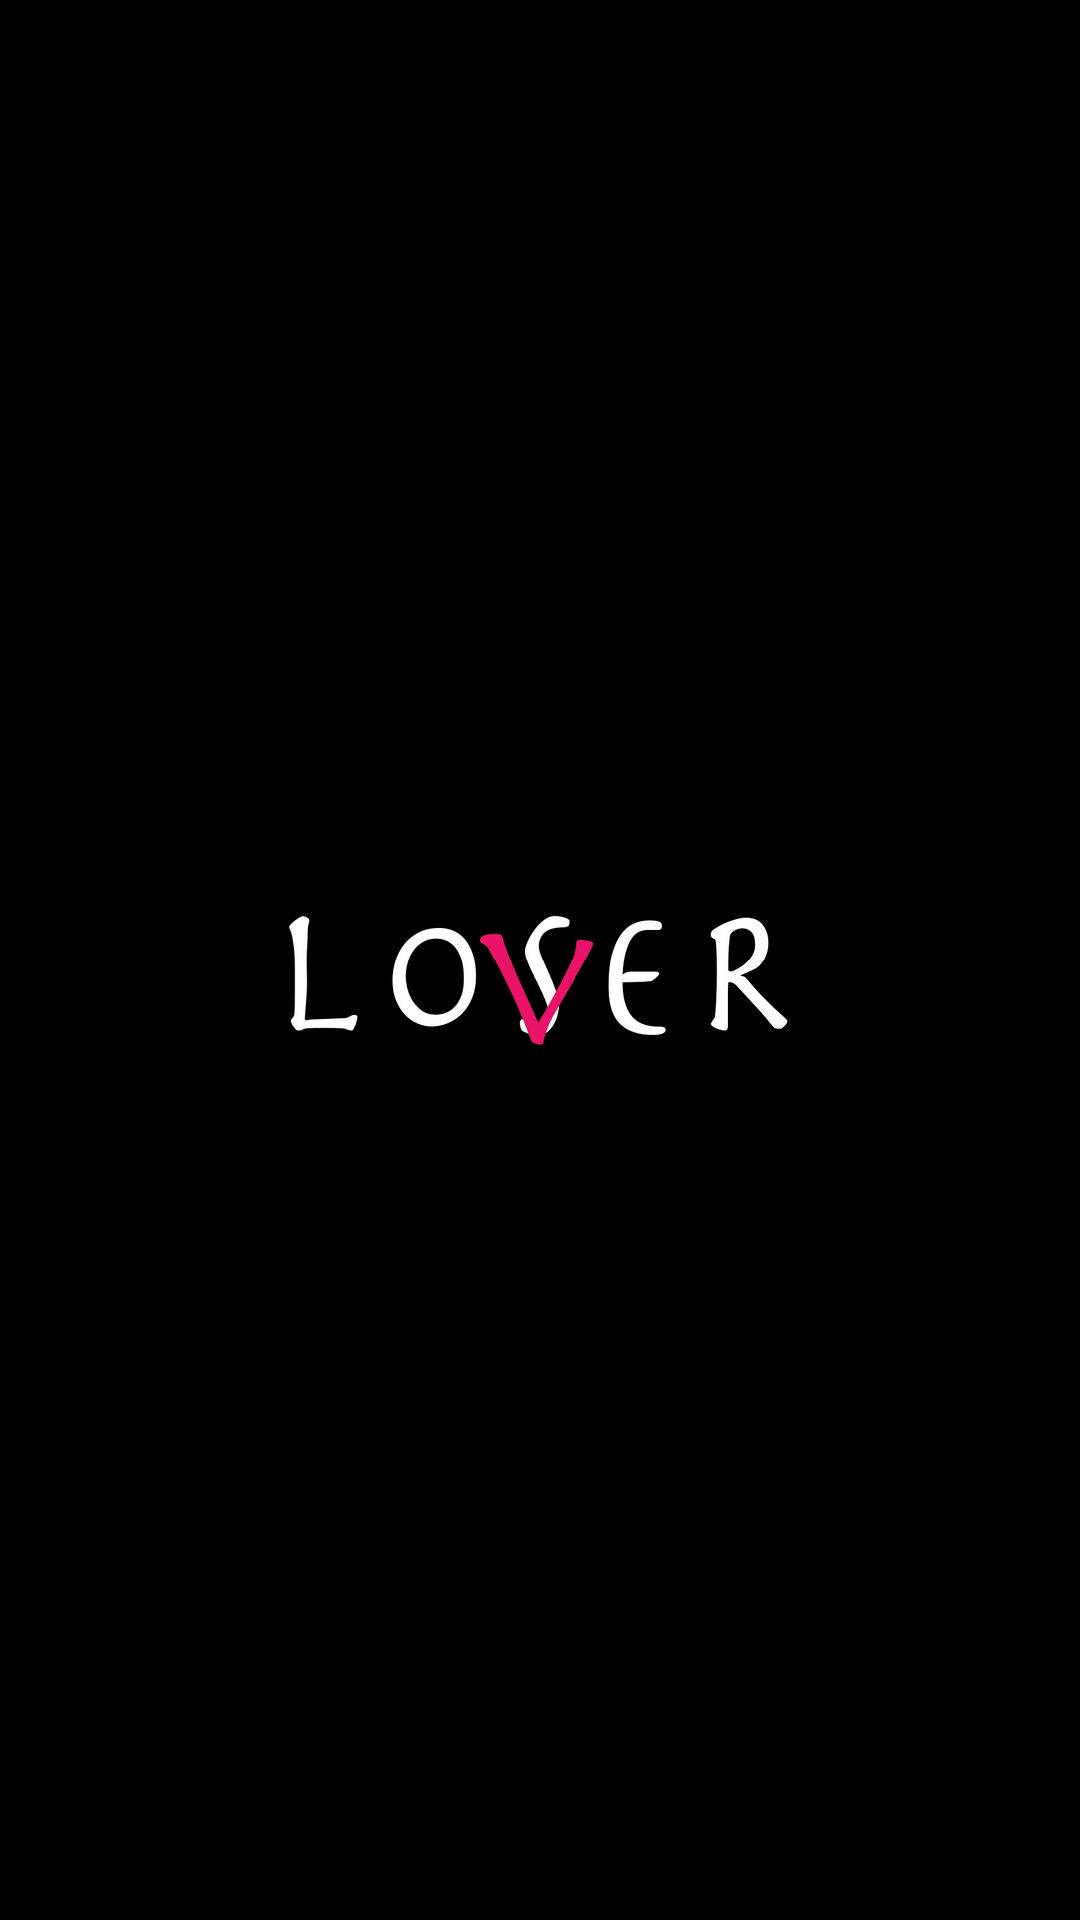 Lovser Text Art Background